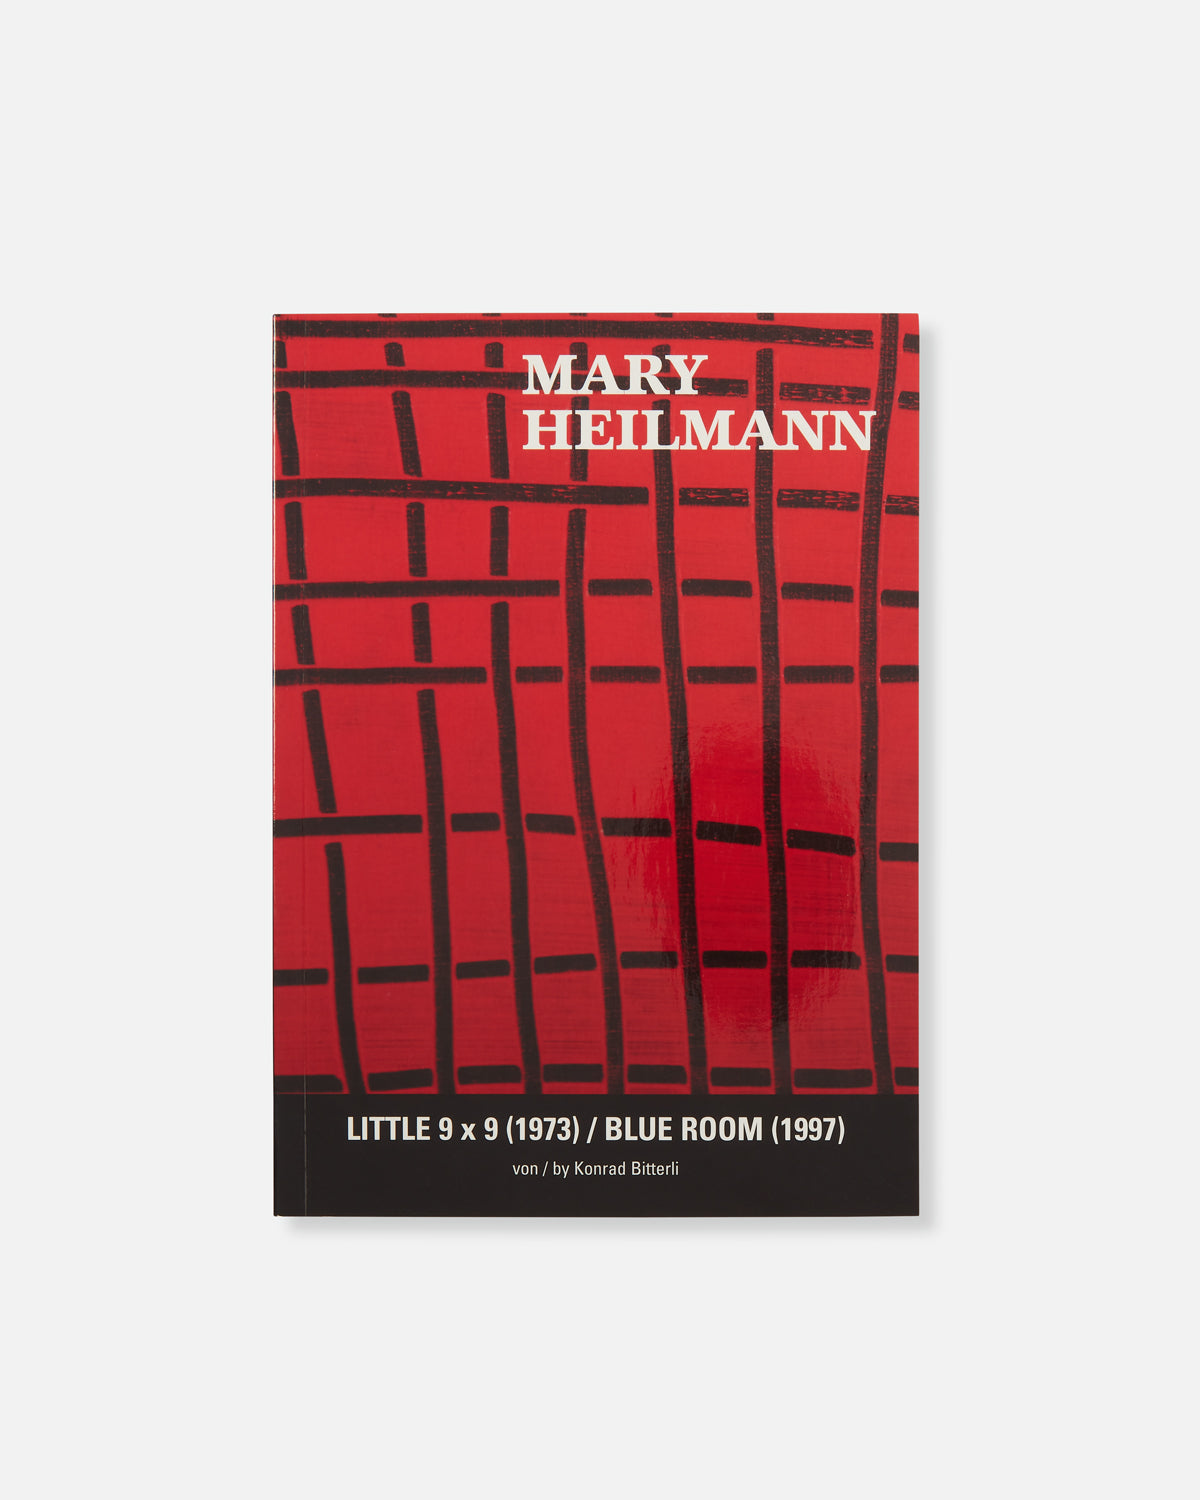 Mary Heilmann: Little 9x9 (1973) / Blue Room (1997)